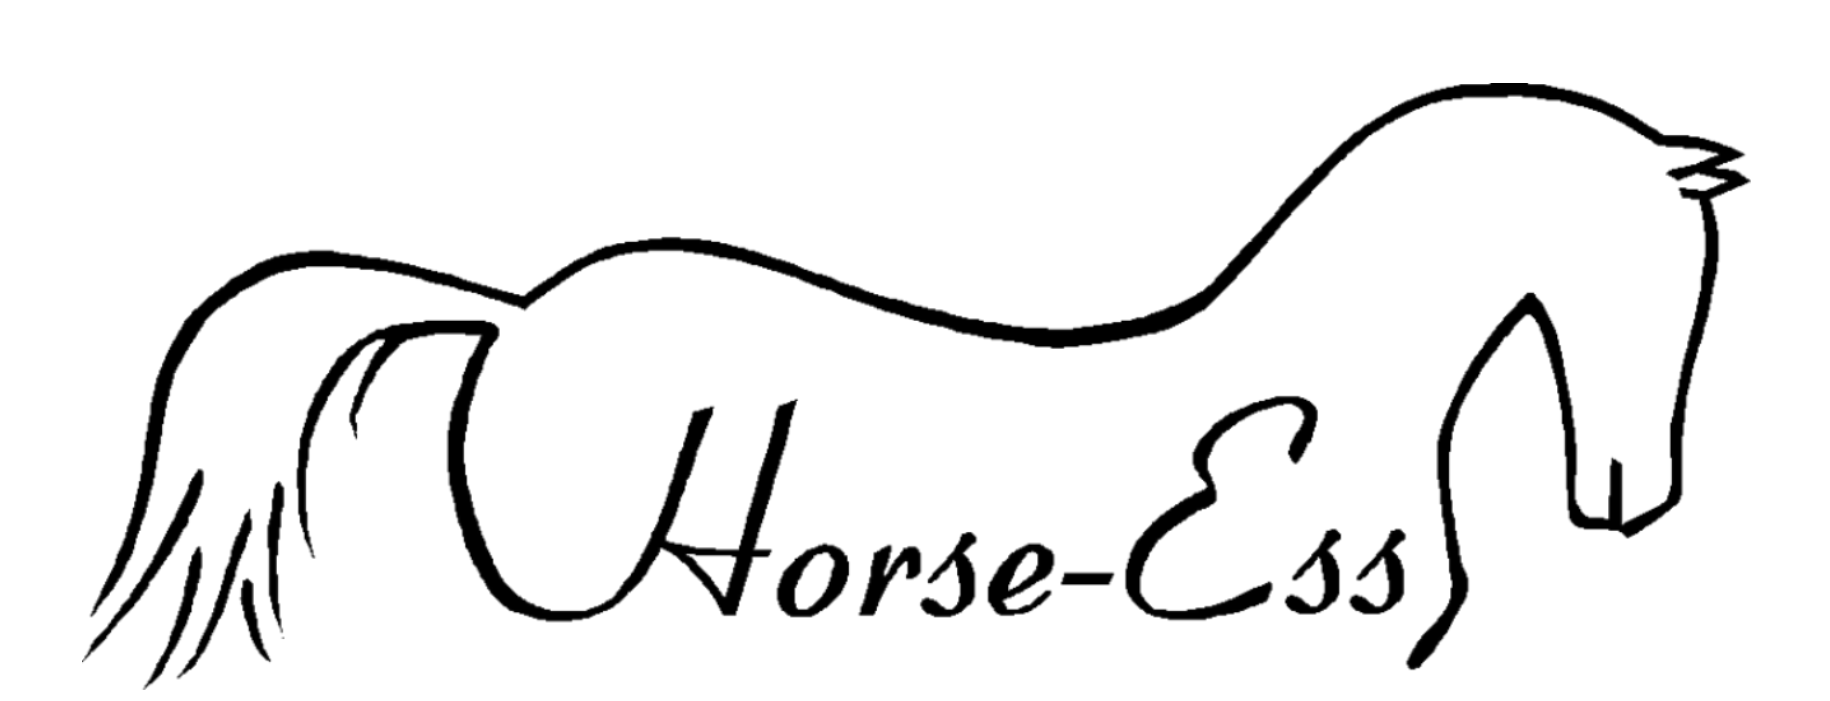 Ab Horse-Ess Oy